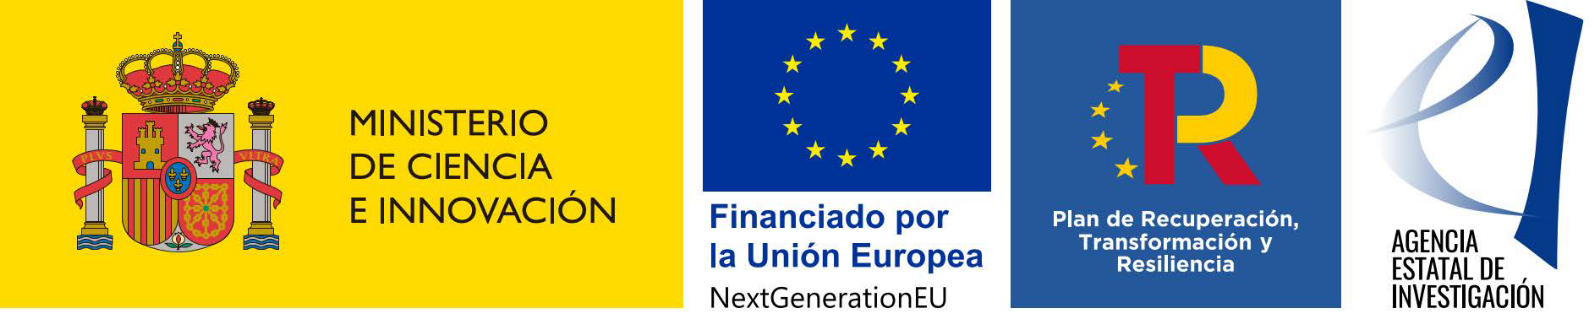 Ministerio de Ciencia e Innovación, Agencia Estatal de Investigación, Plan de Recuperación, Transformación y Resiliencia, Unión Europea-Next Generation EU